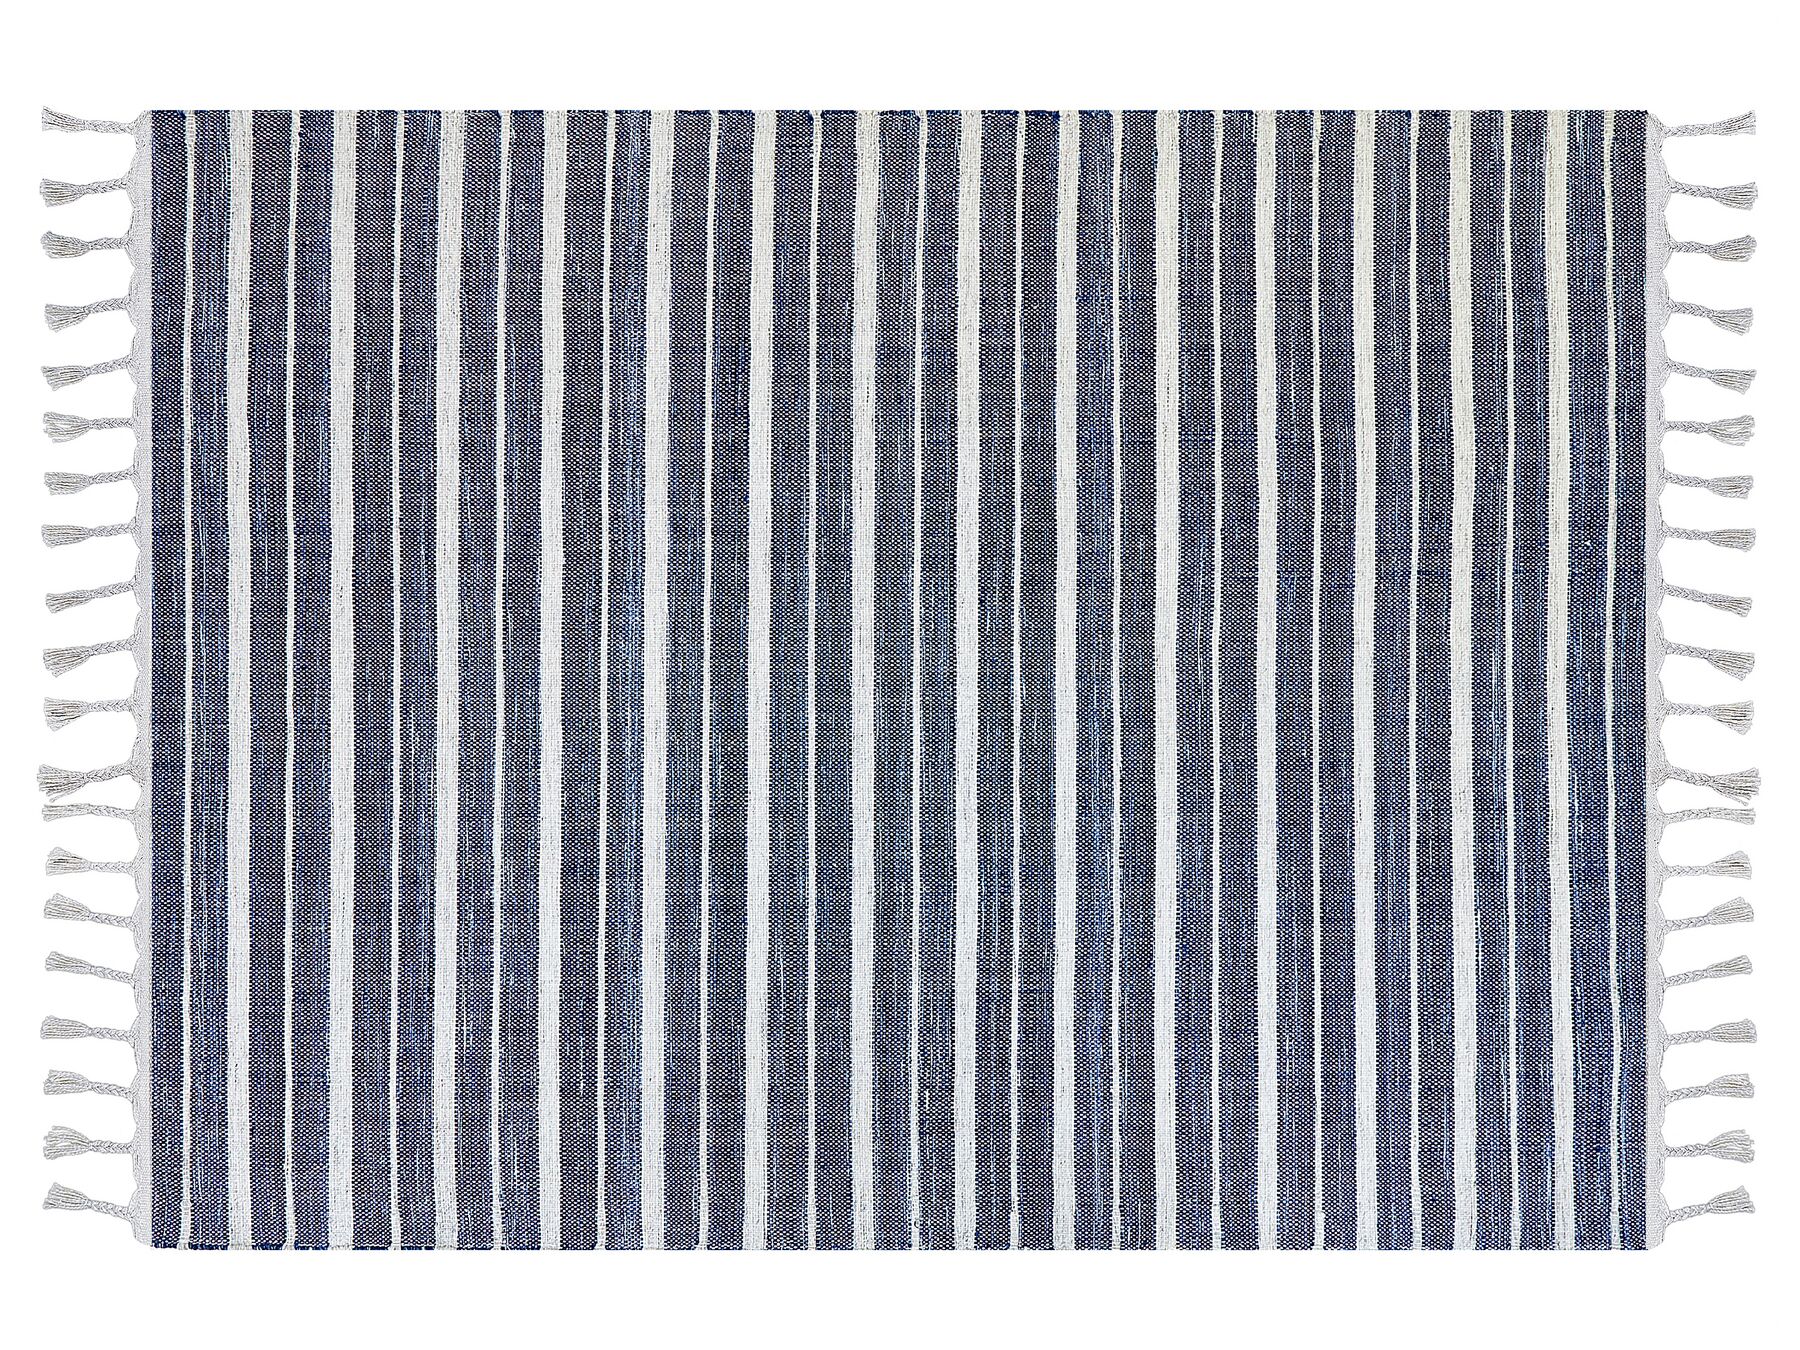 Outdoor Teppich dunkelblau / weiß 140 x 200 cm Streifenmuster Kurzflor BADEMLI_846569